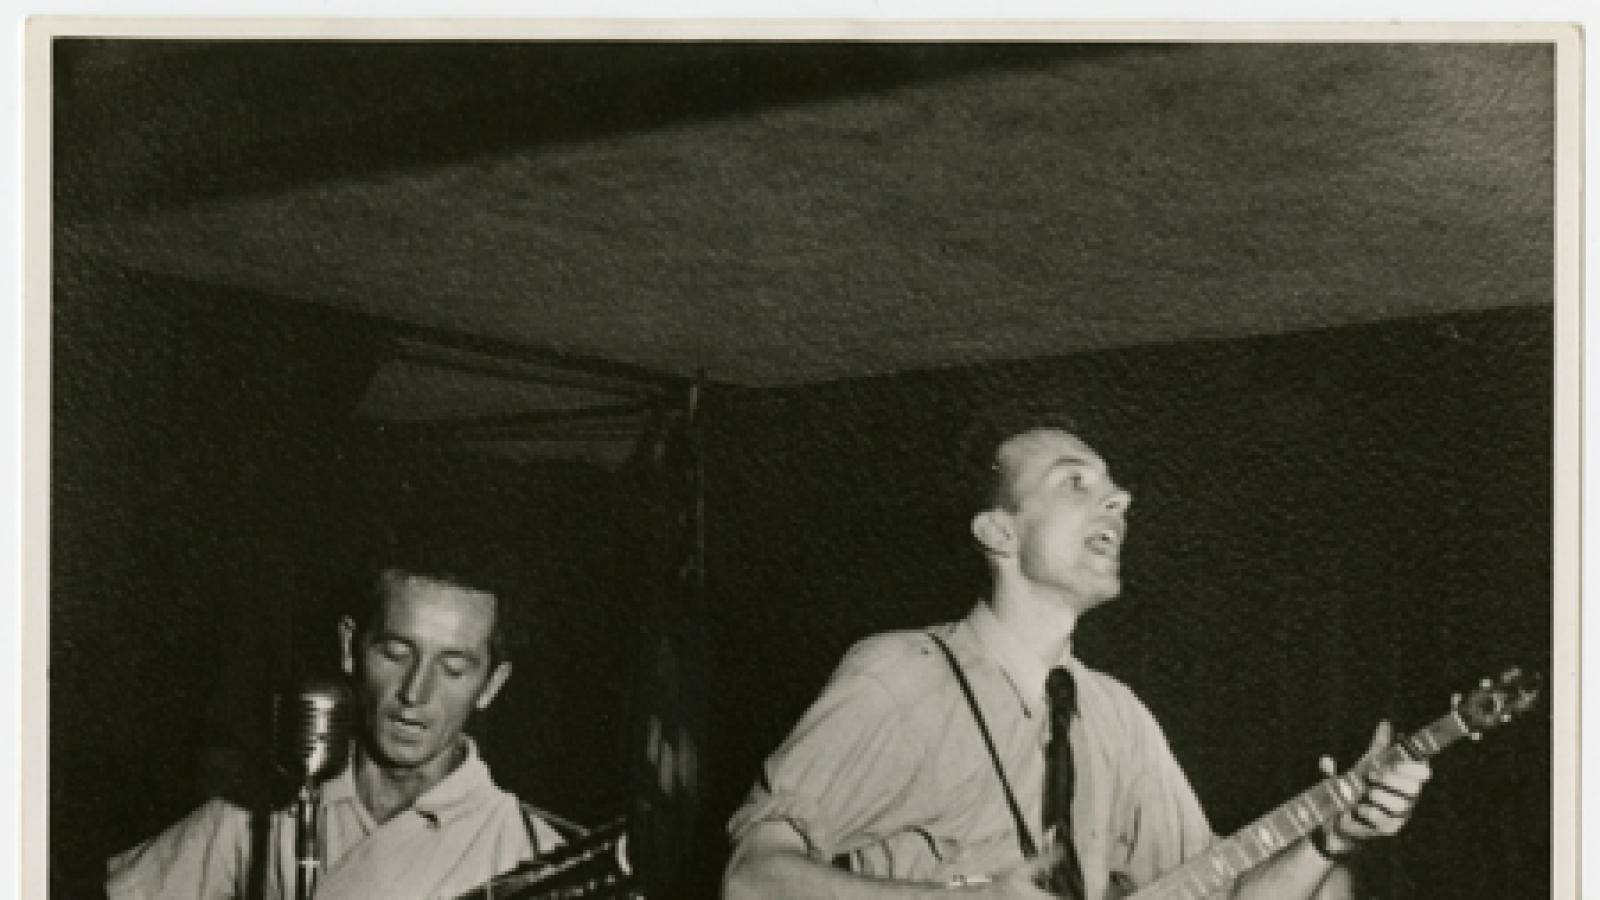 Folk legends - Woody Guthrie and Pete Seeger Wallpaper